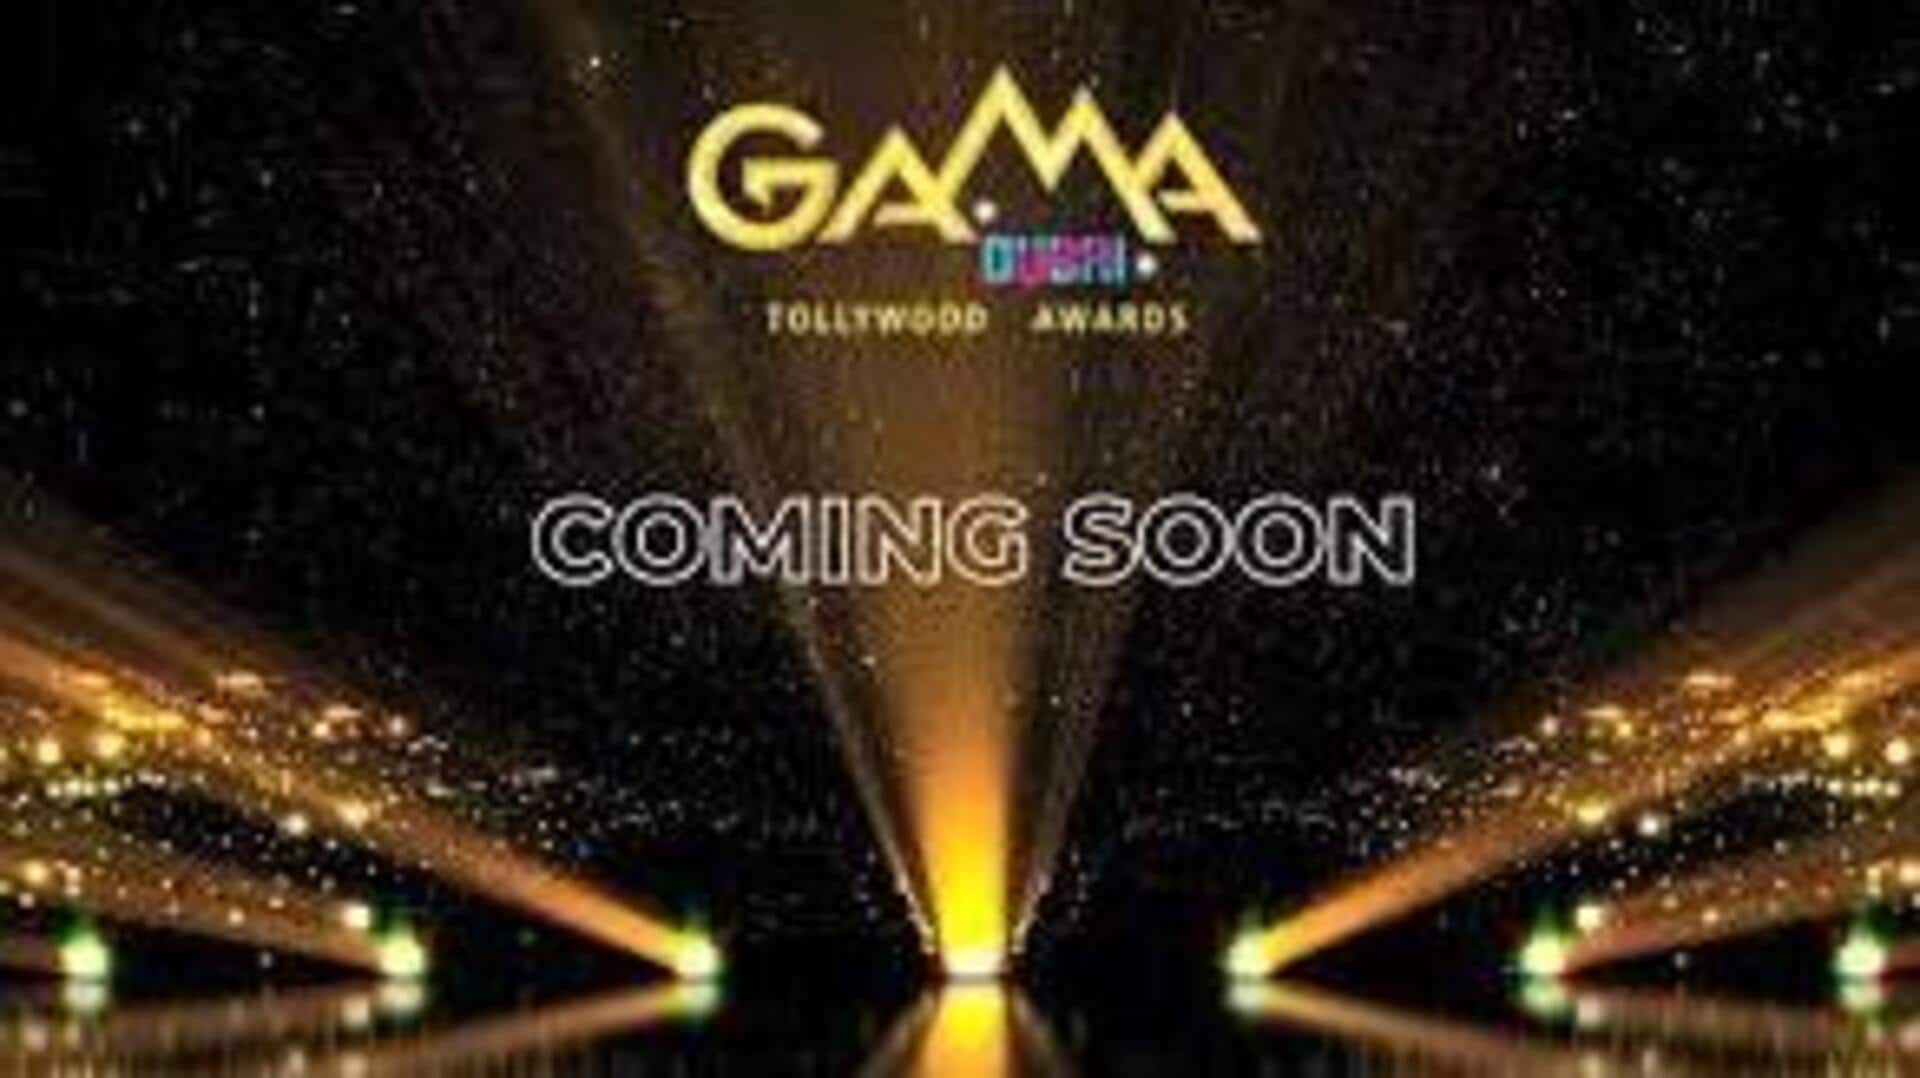 GAMA Awards : దుబాయ్‌లో గామా టాలీవుడ్ అవార్డ్స్.. అల్లు అర్జున్‌కు ప్రత్యేక గౌరవం!